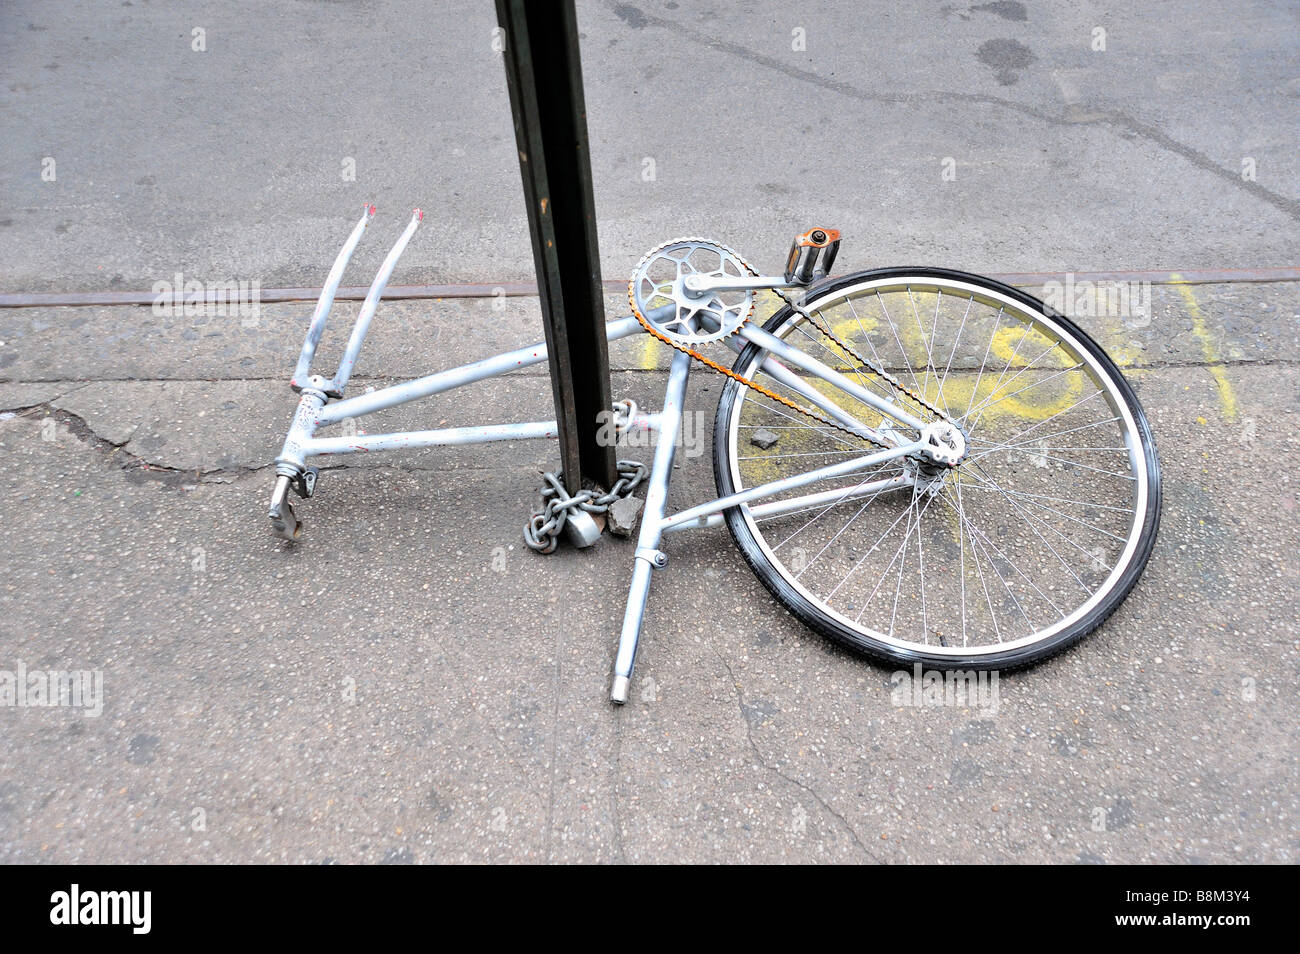 Ein Defekt Fahrrad angekettet an einen Wegweiser in New York City Stockfoto